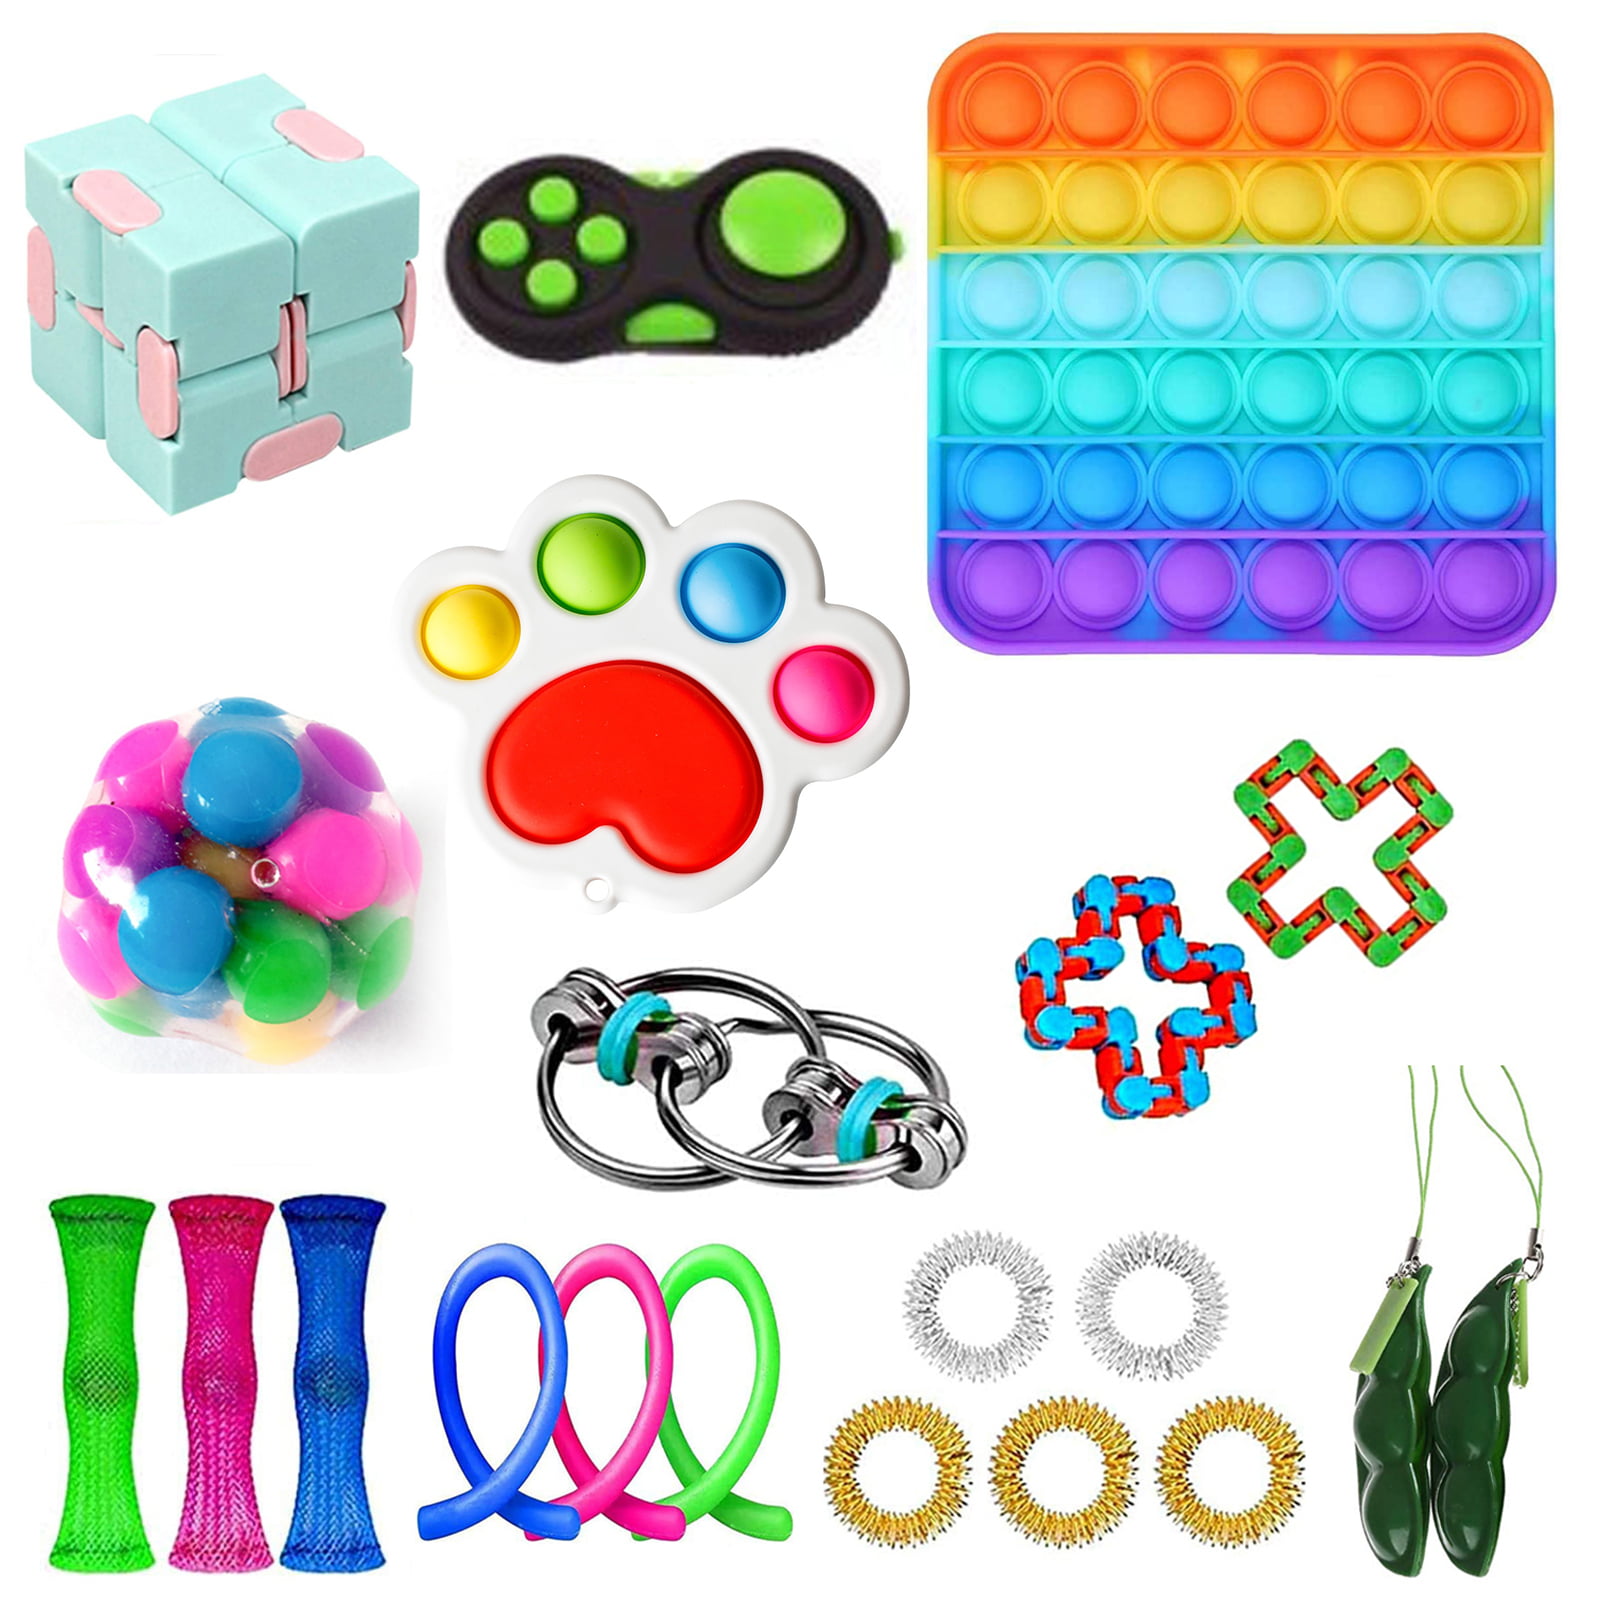 Details about   12PC Fidget Toys Set Sensory Tools Bundle Stress Relief Hand Kids Adults Toy US 